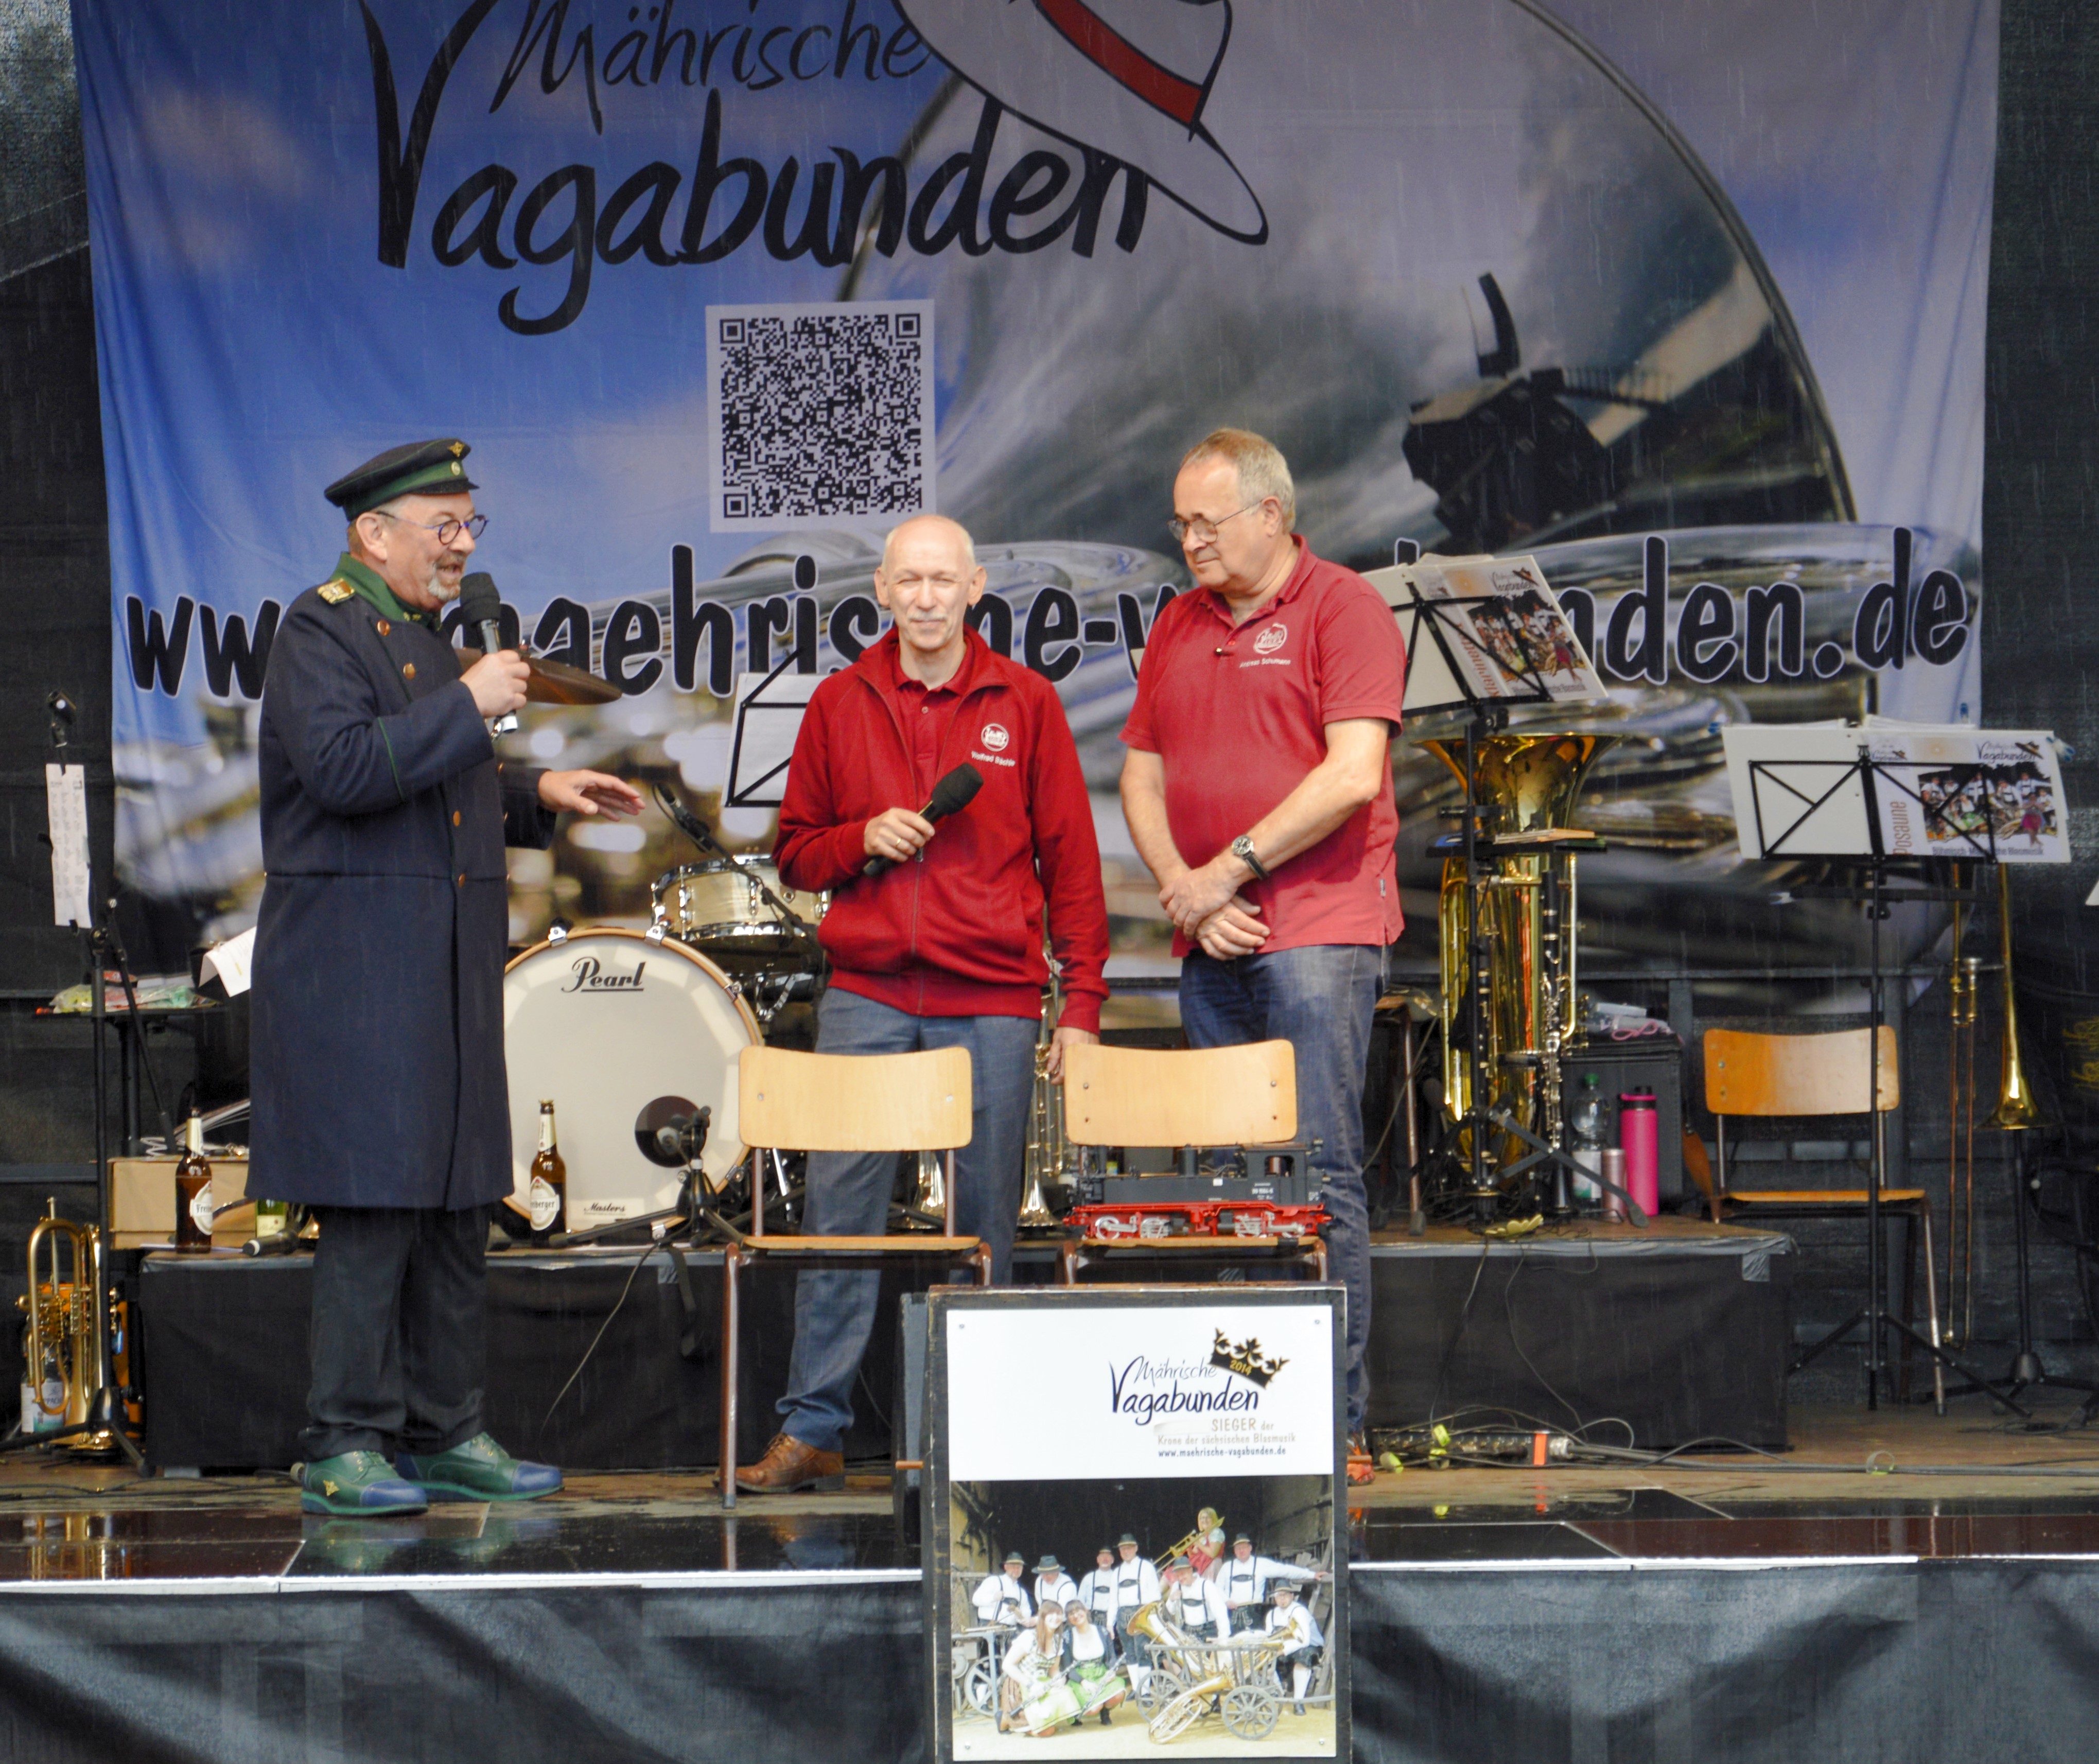 Kaffeklatsch mit Alfred Simm (SOEG), Wolfrad Bchle (LGB), Andreas Schumann (LGB) auf der Veranstaltung der Historic Mobil 